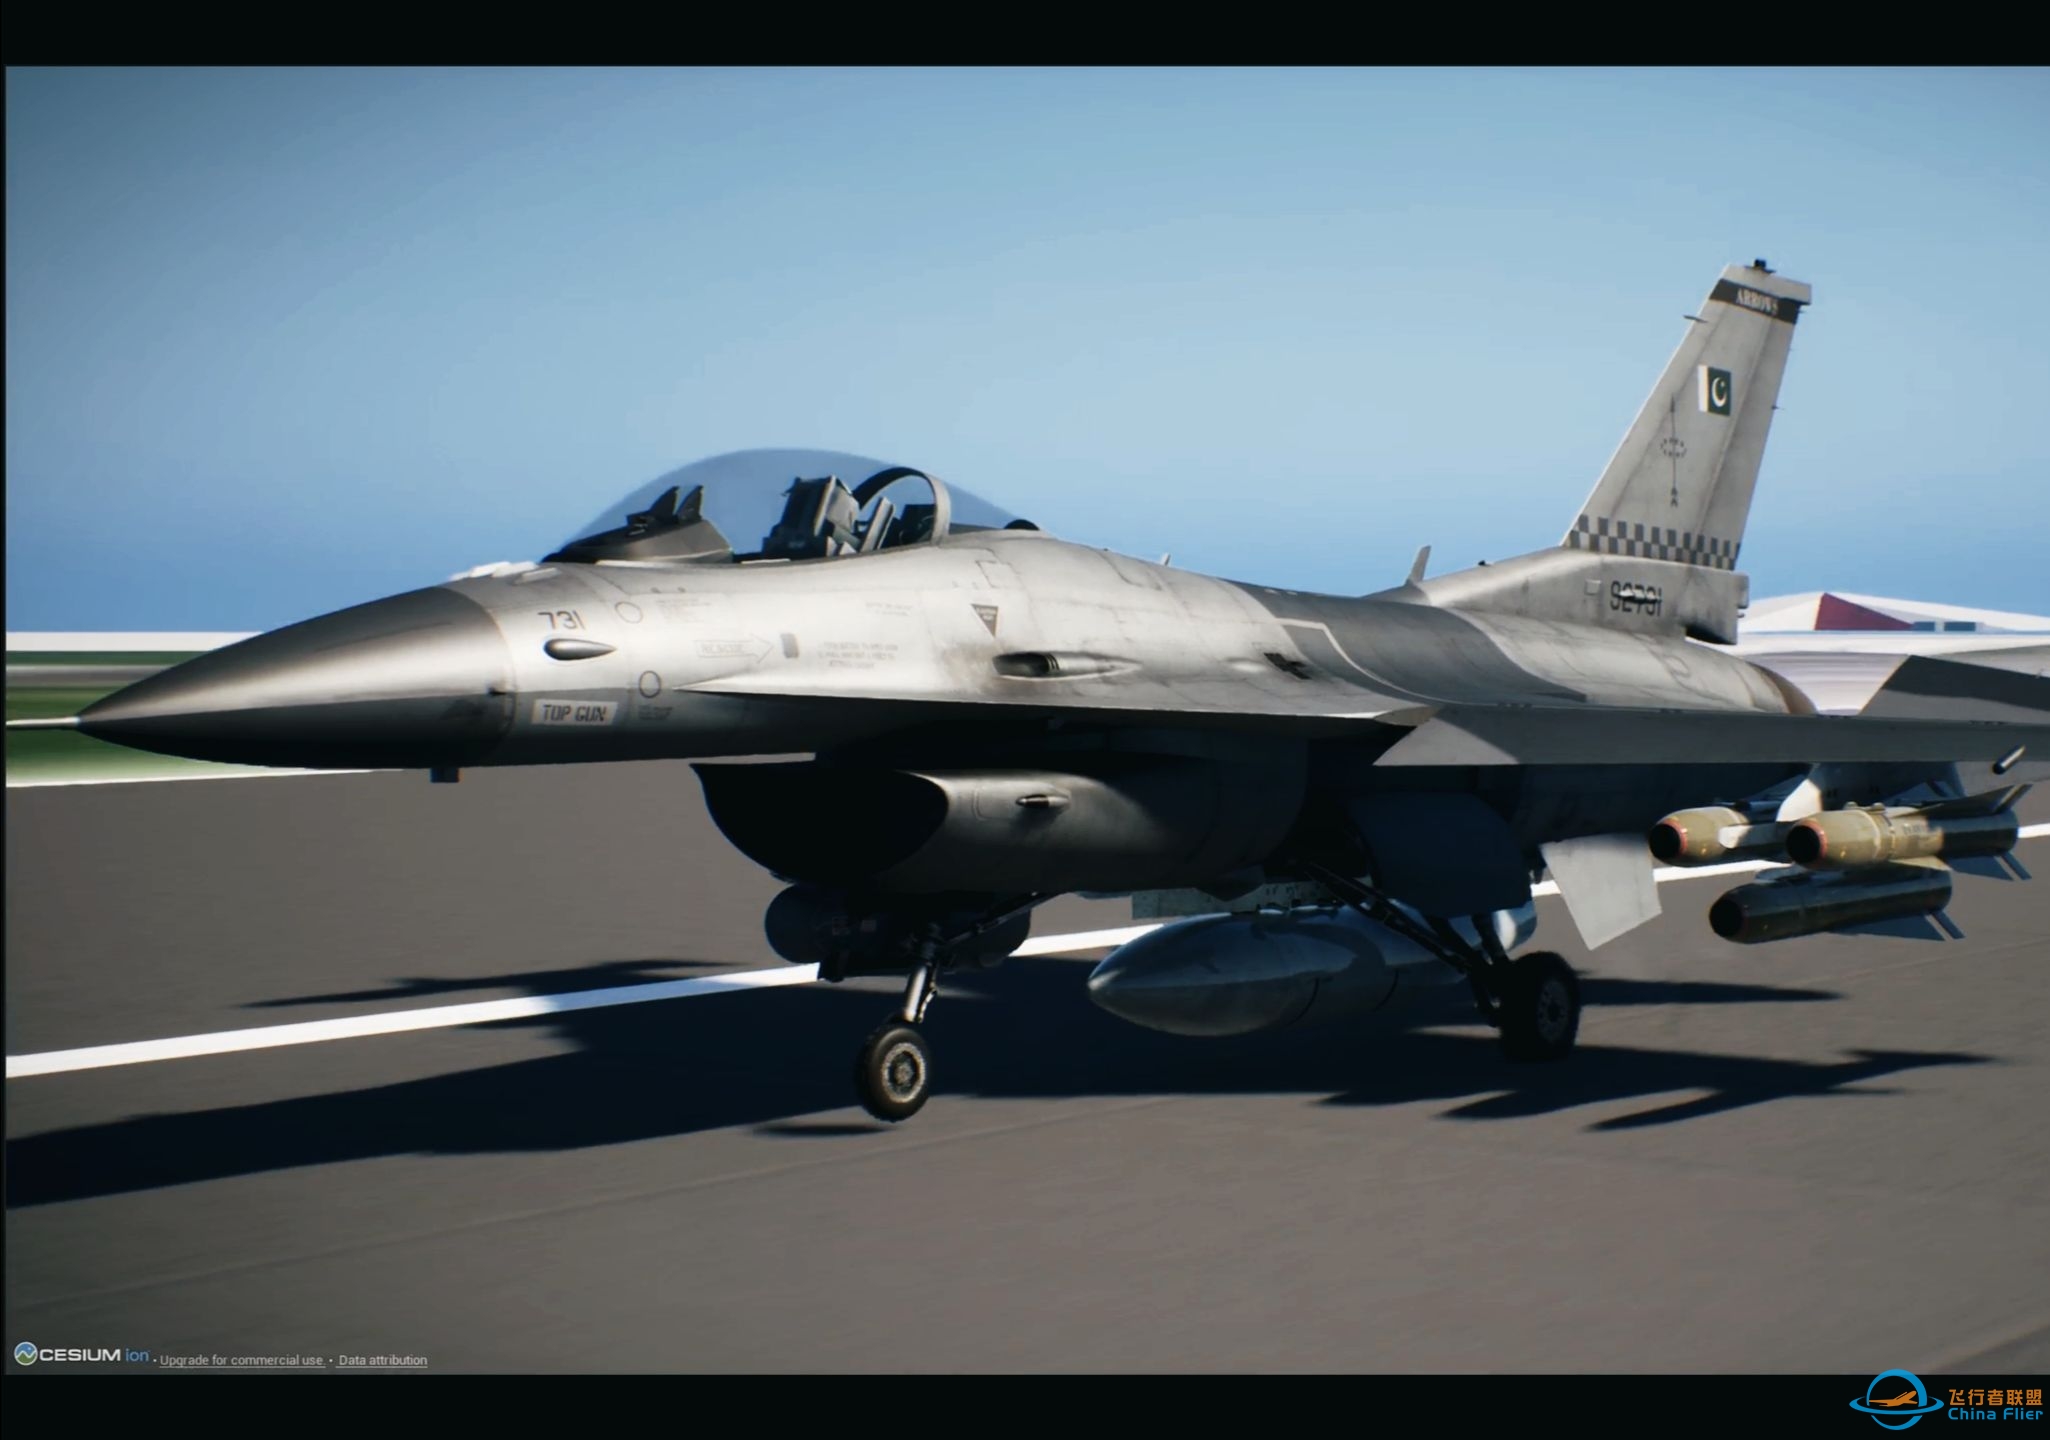 【毕业作品】自制飞行模拟F16战机展示-5791 